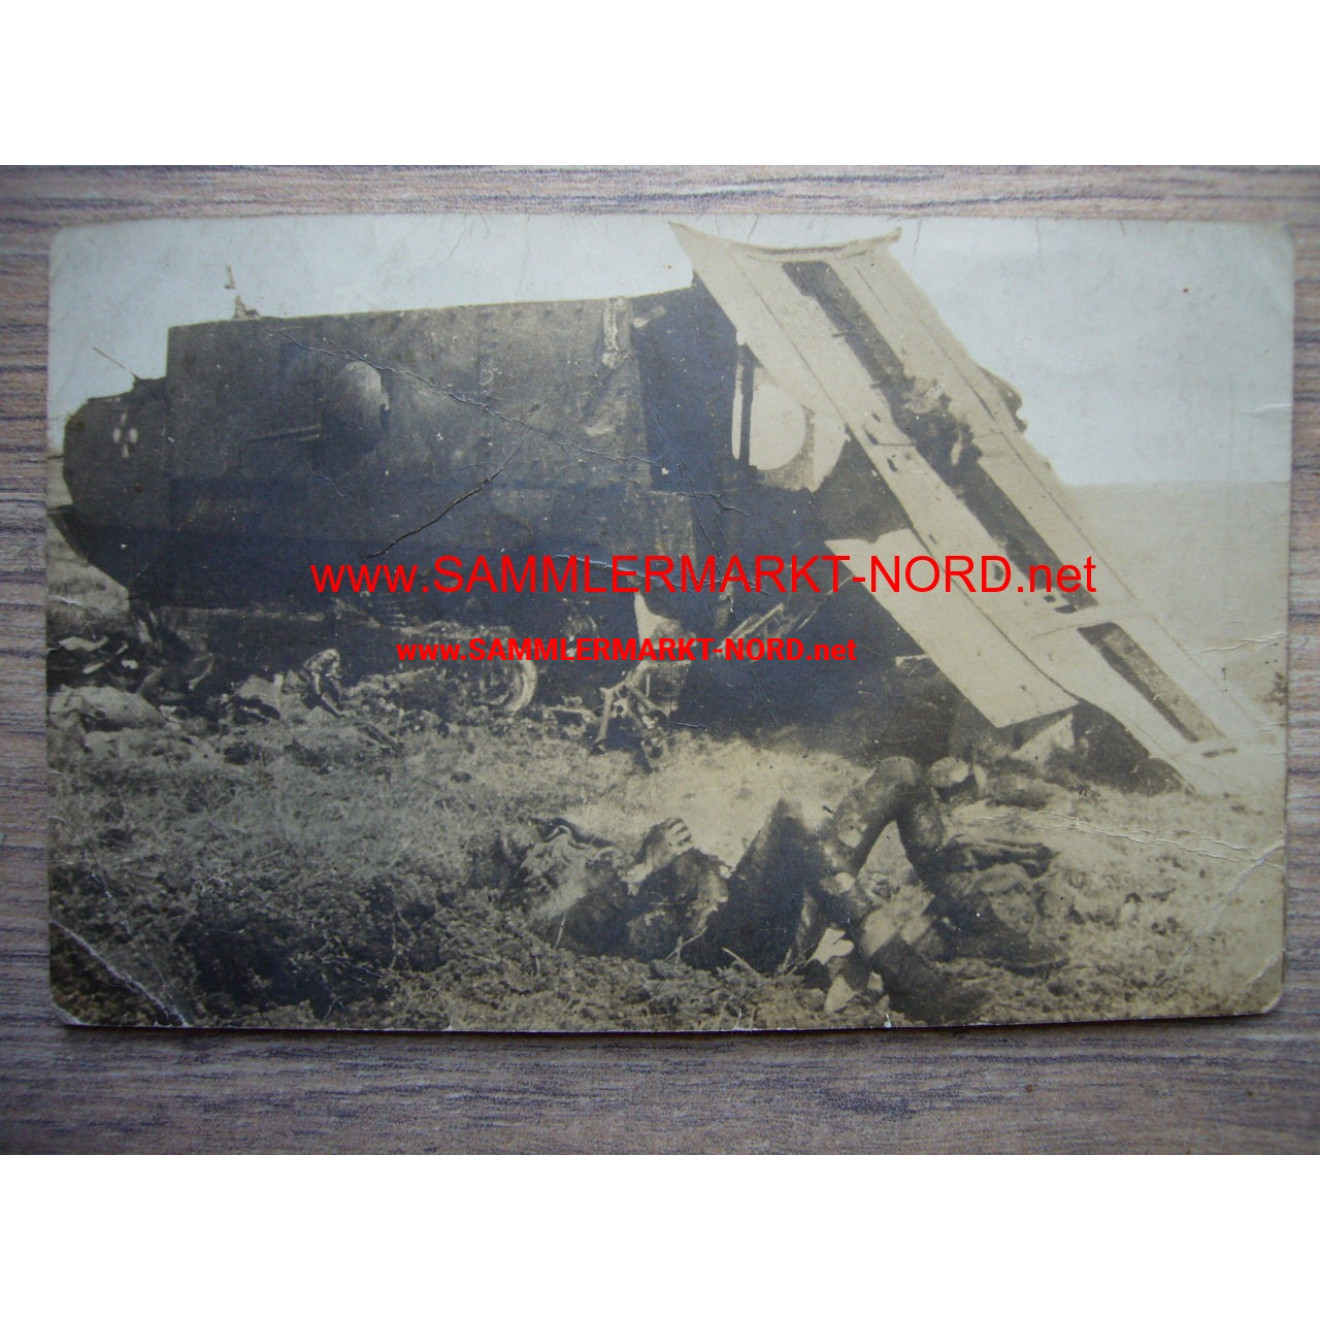 Bei Anizy (Frankreich) - zerstörter Panzer & Toter